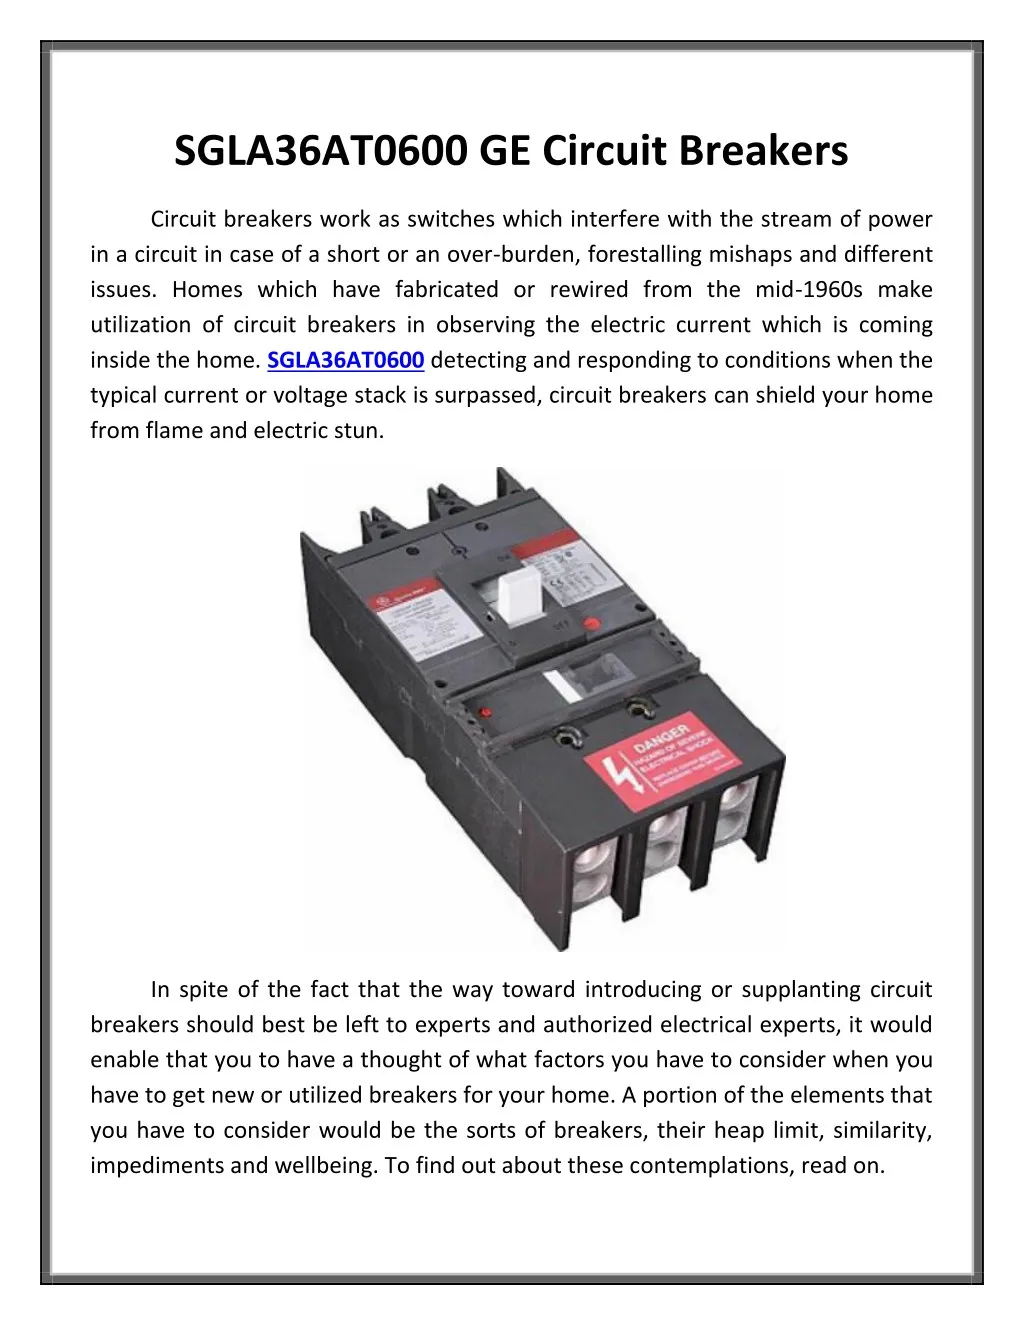 sgla36at0600 ge circuit breakers